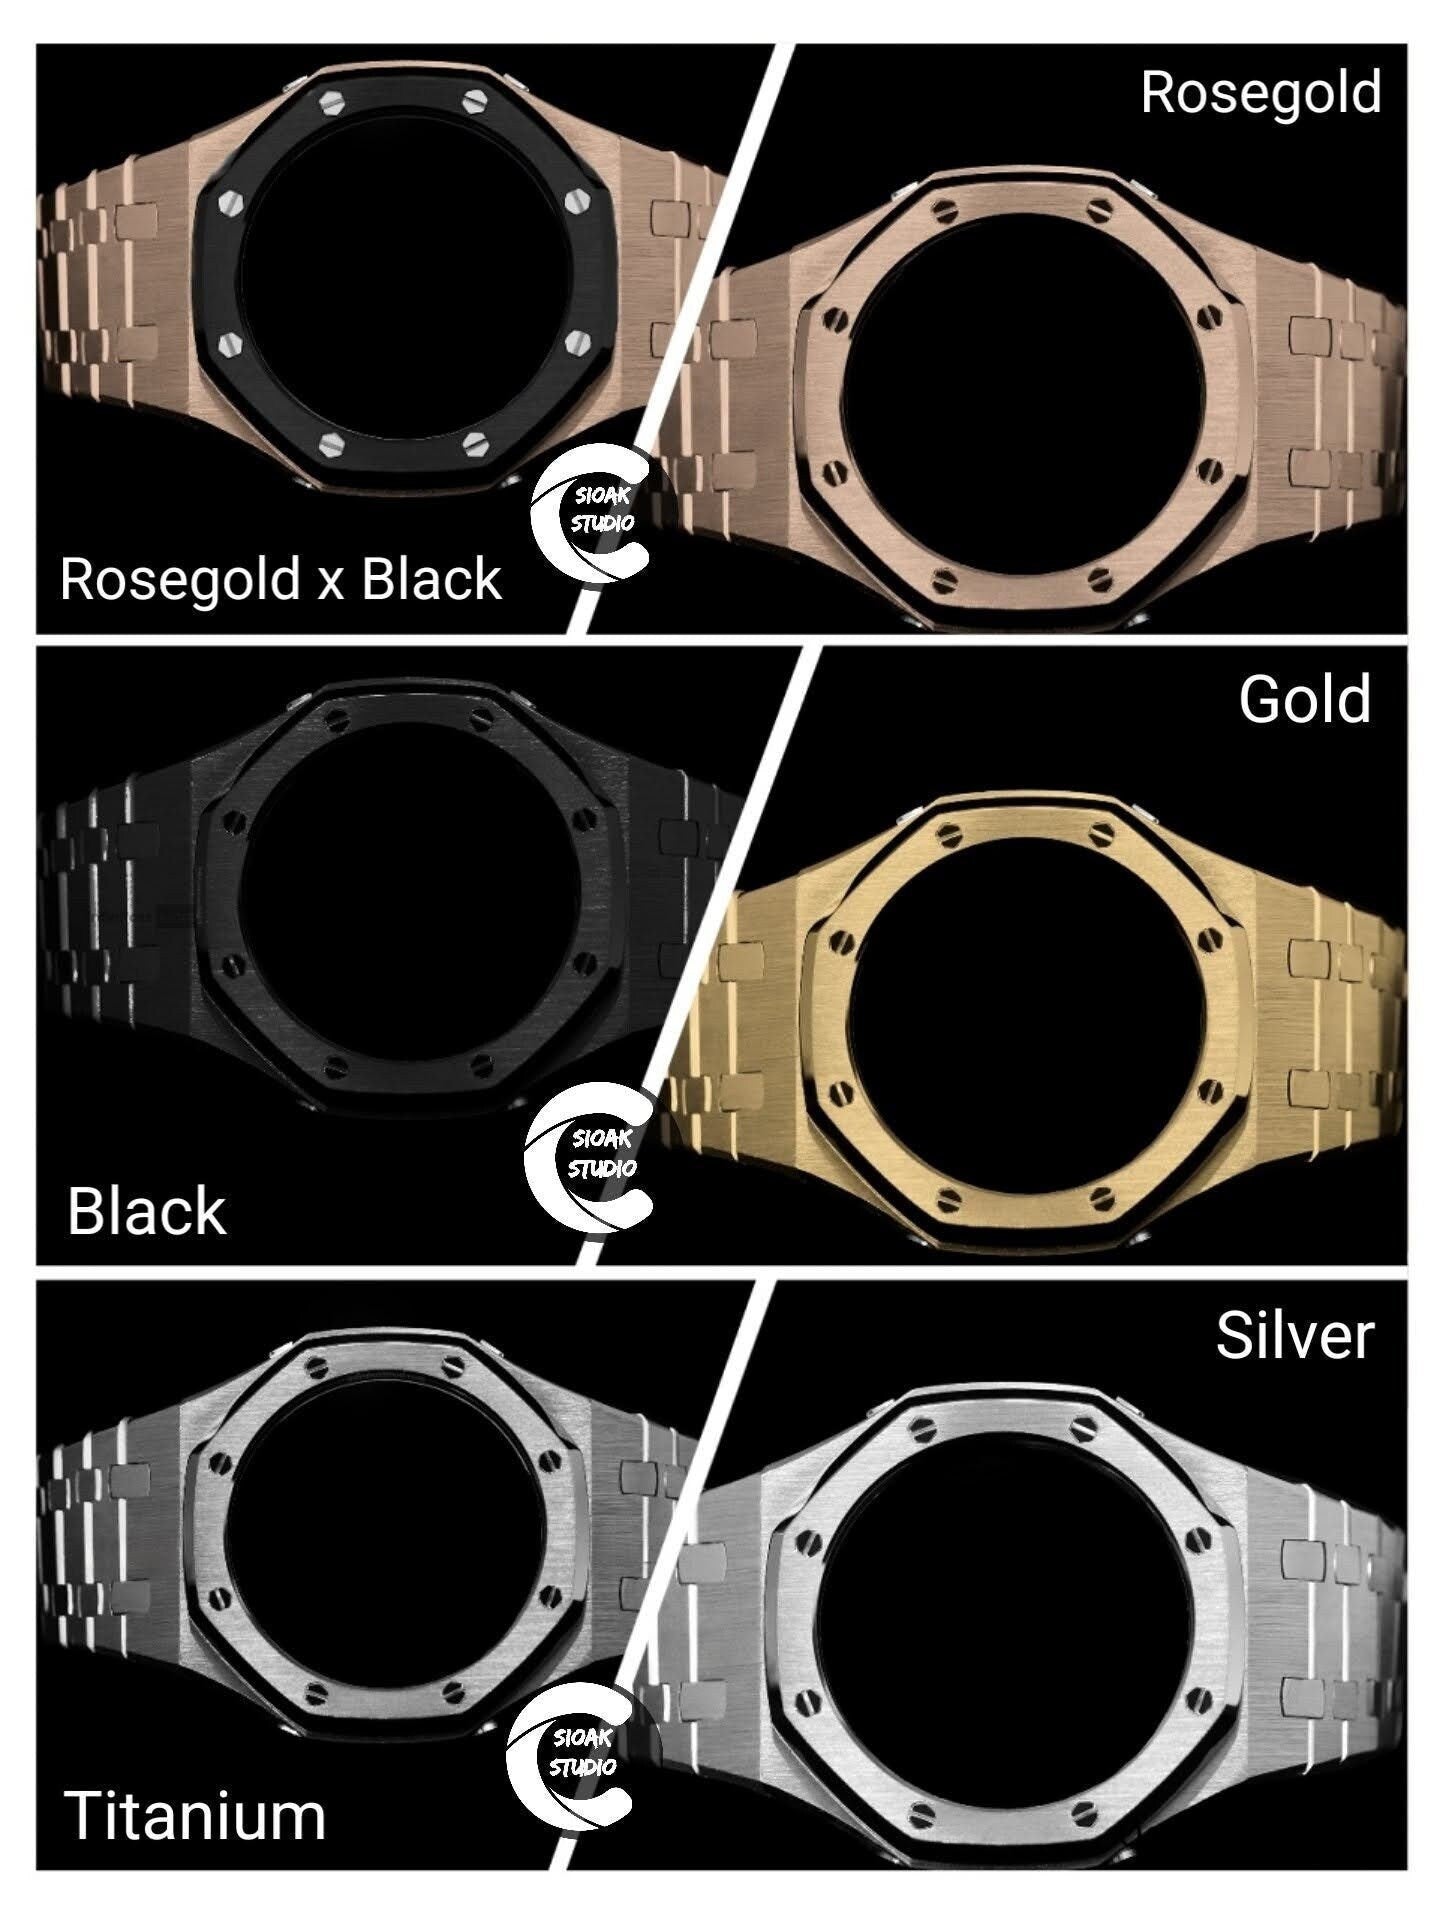 Casioak Mod Watch Silver Case Metal Strap Black Rose Gold Time Mark Black Dial 44mm - Casioak Studio